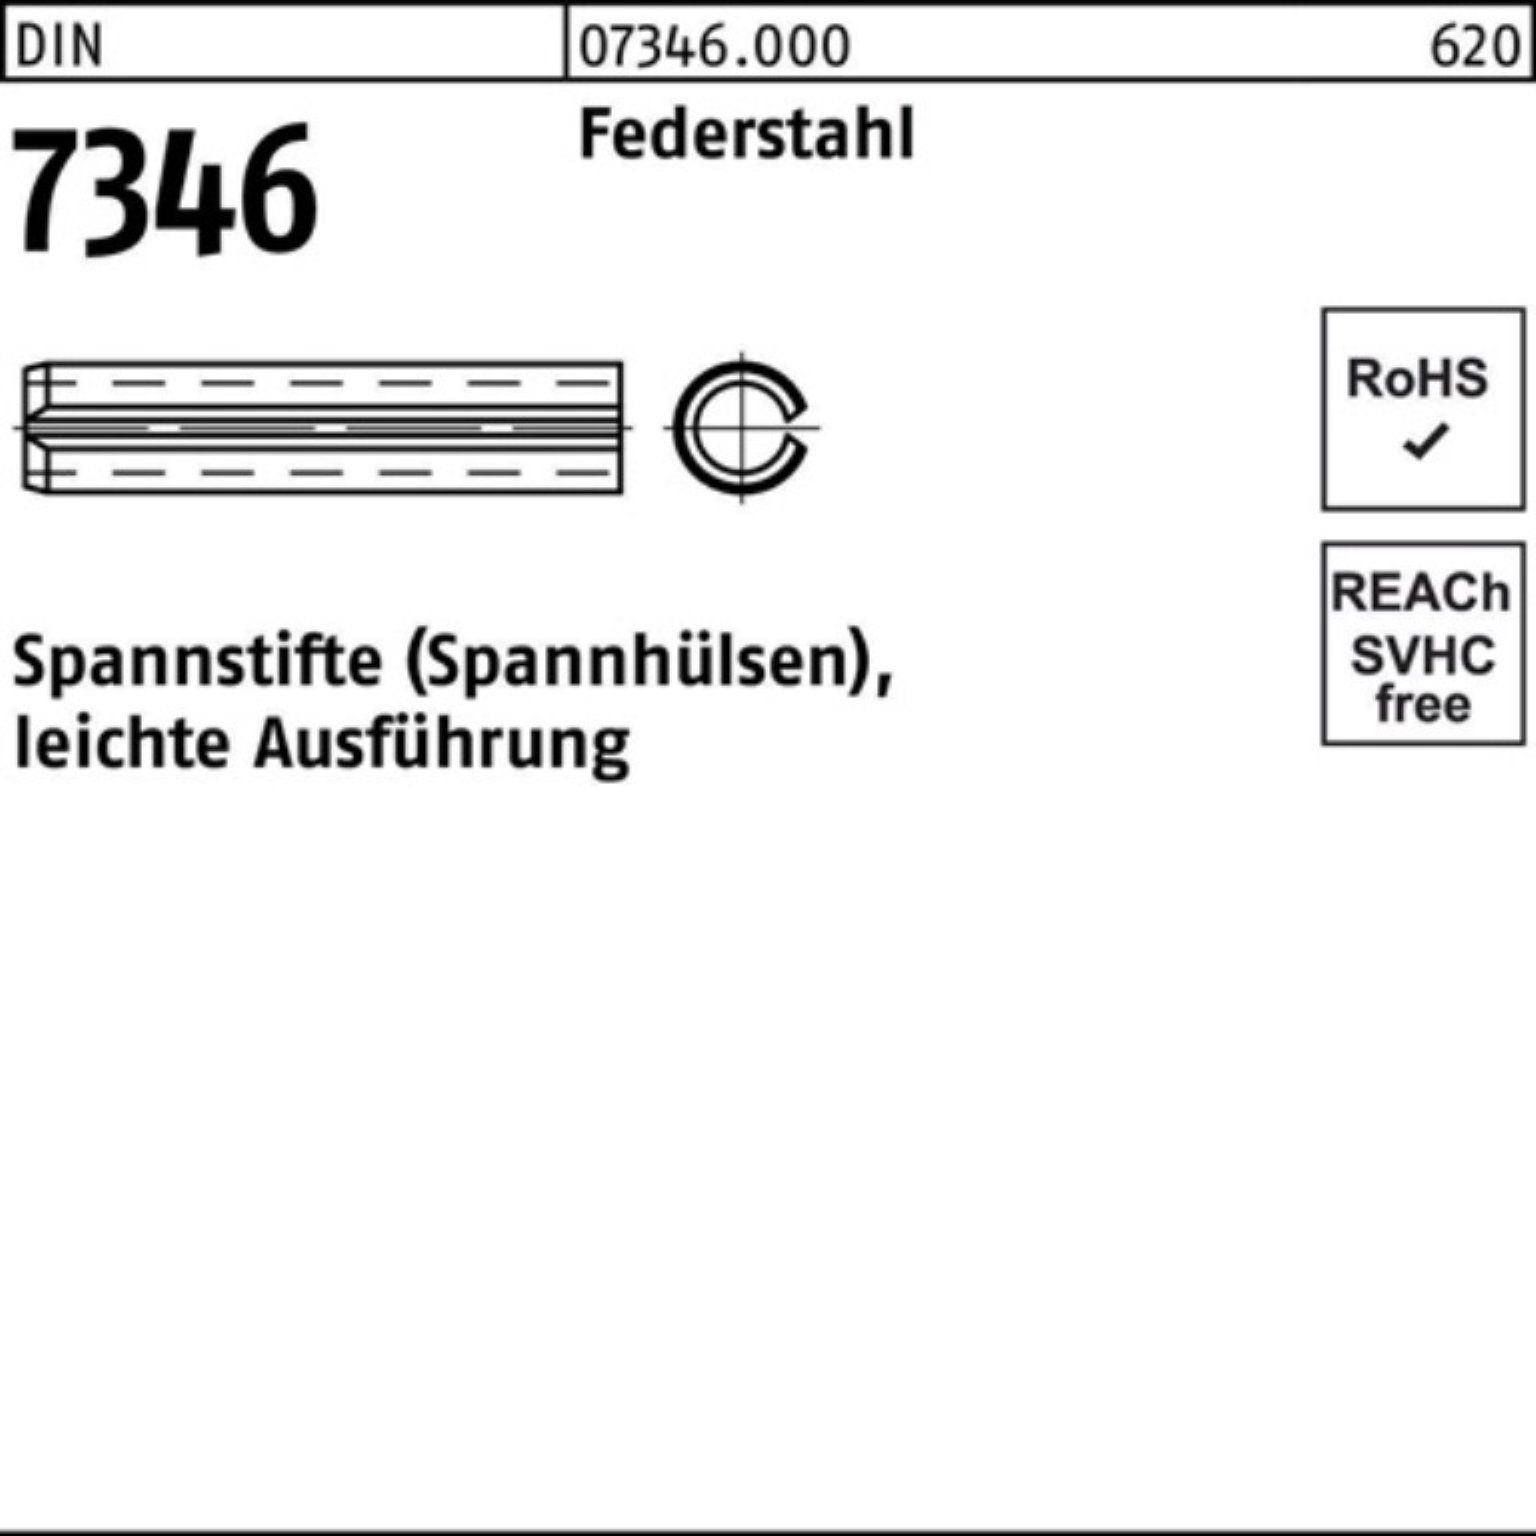 13337 Spannstift Ausf Spannstift 22 leichte 7346/ISO 100er Pack DIN 6x Federstahl Reyher